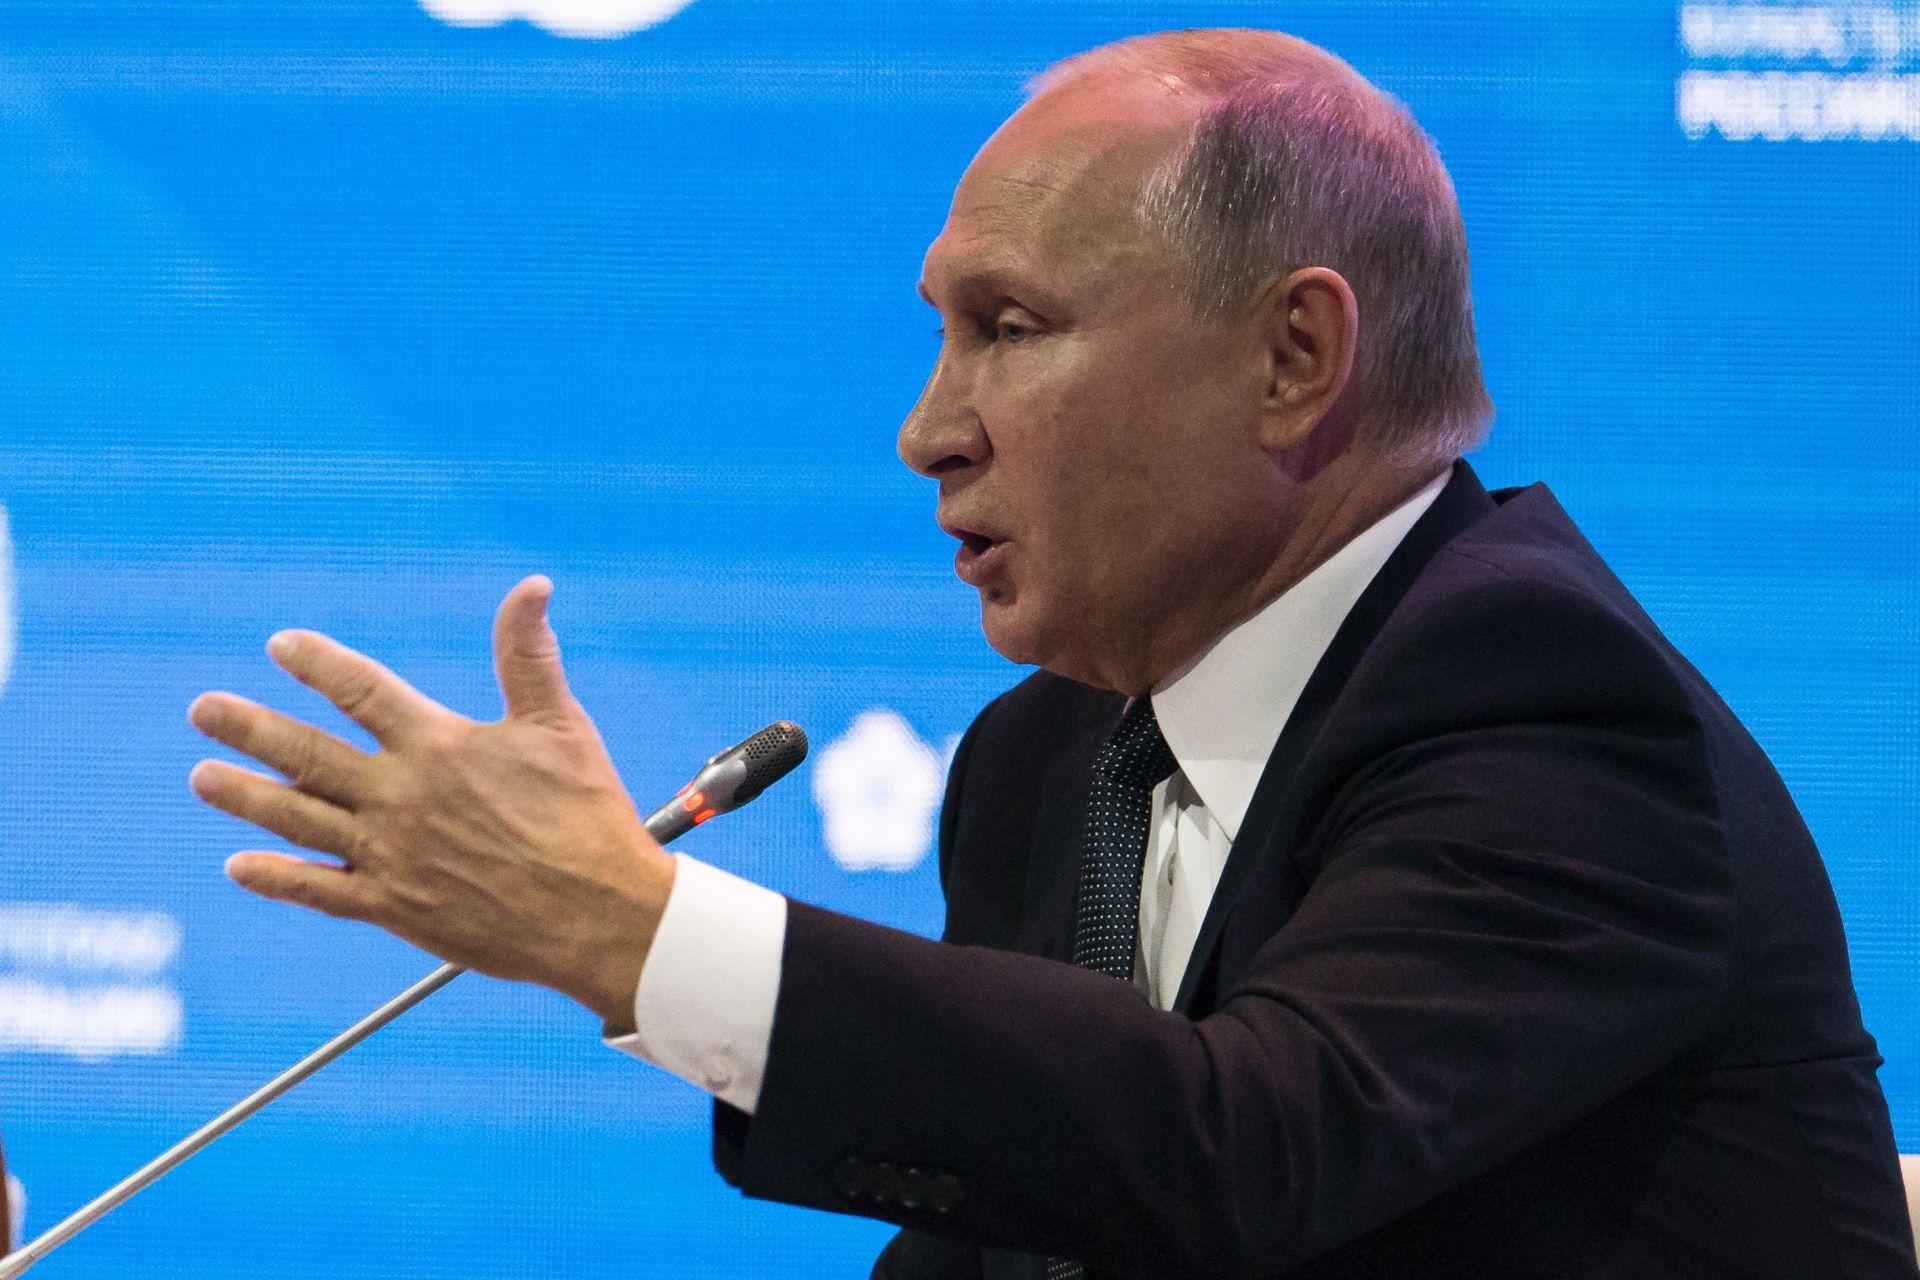 Някои информационни източници се опитват да Скрипал изкарат правозащитник, възропта Путин